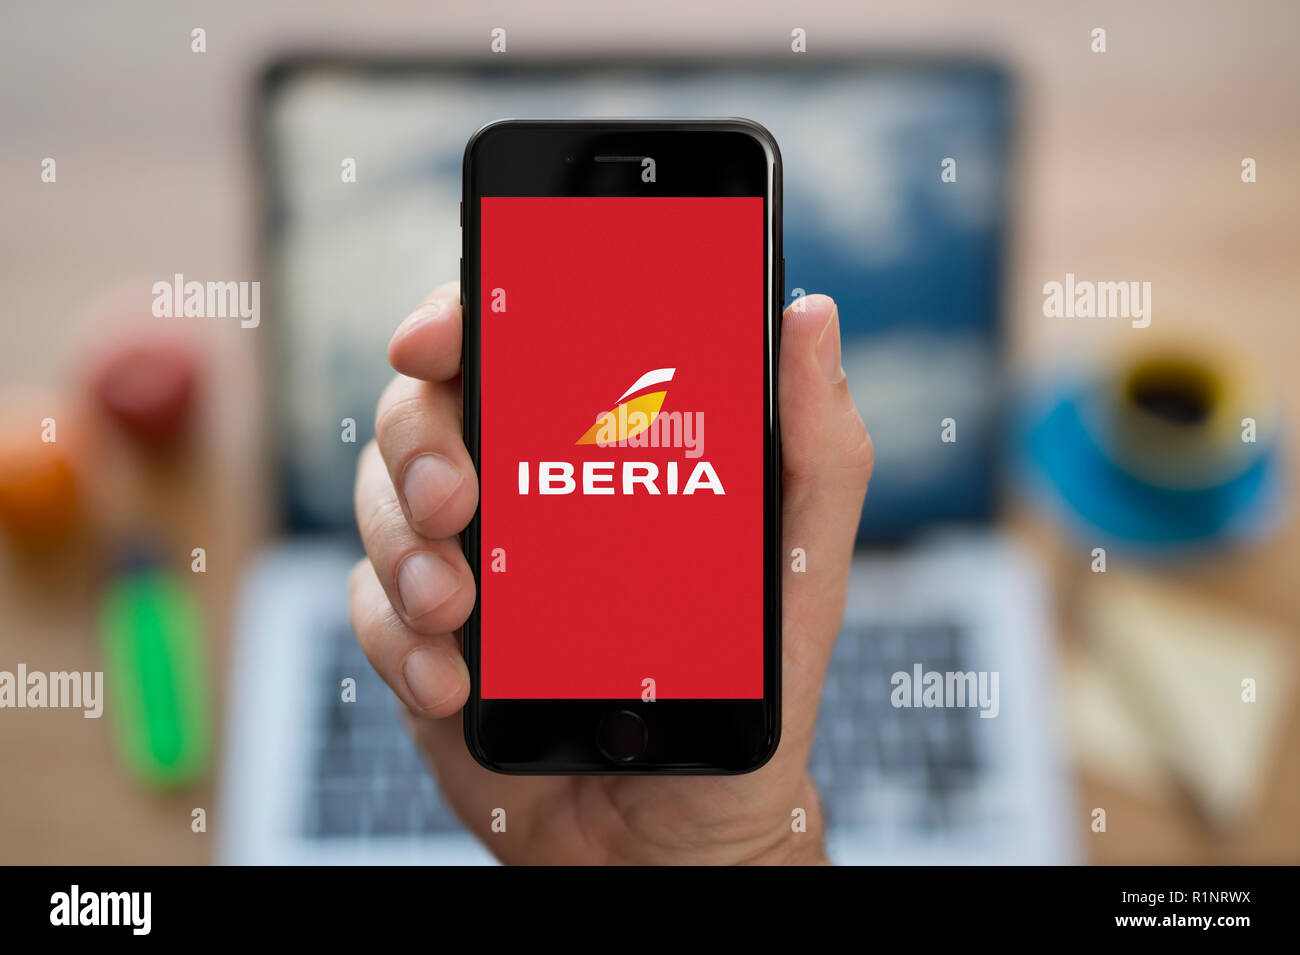 Un uomo guarda al suo iPhone che visualizza il logo di Iberia, mentre se ne sta seduto alla sua scrivania per computer (solo uso editoriale). Foto Stock